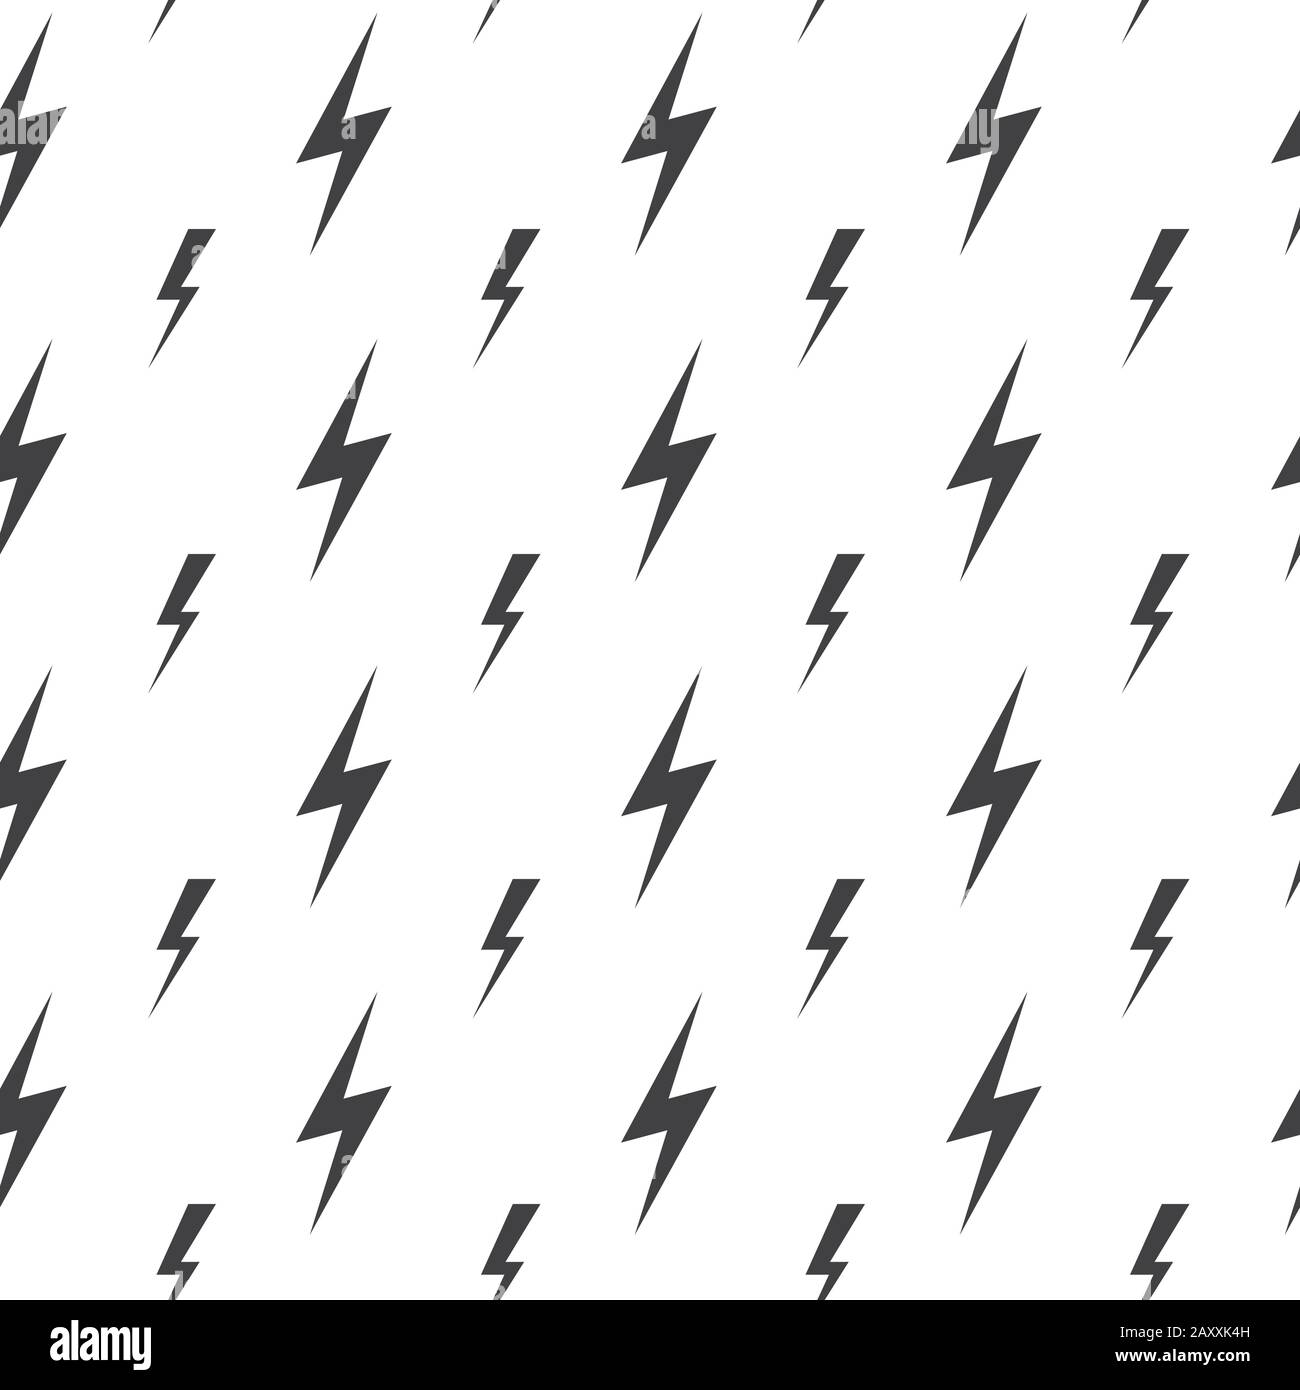 Lightning bolts, thunderbolts vector seamless pattern. Thunder  bolt pattern, thunder bolt lightning pattern, energy thunder bolt pattern illustration Stock Vector